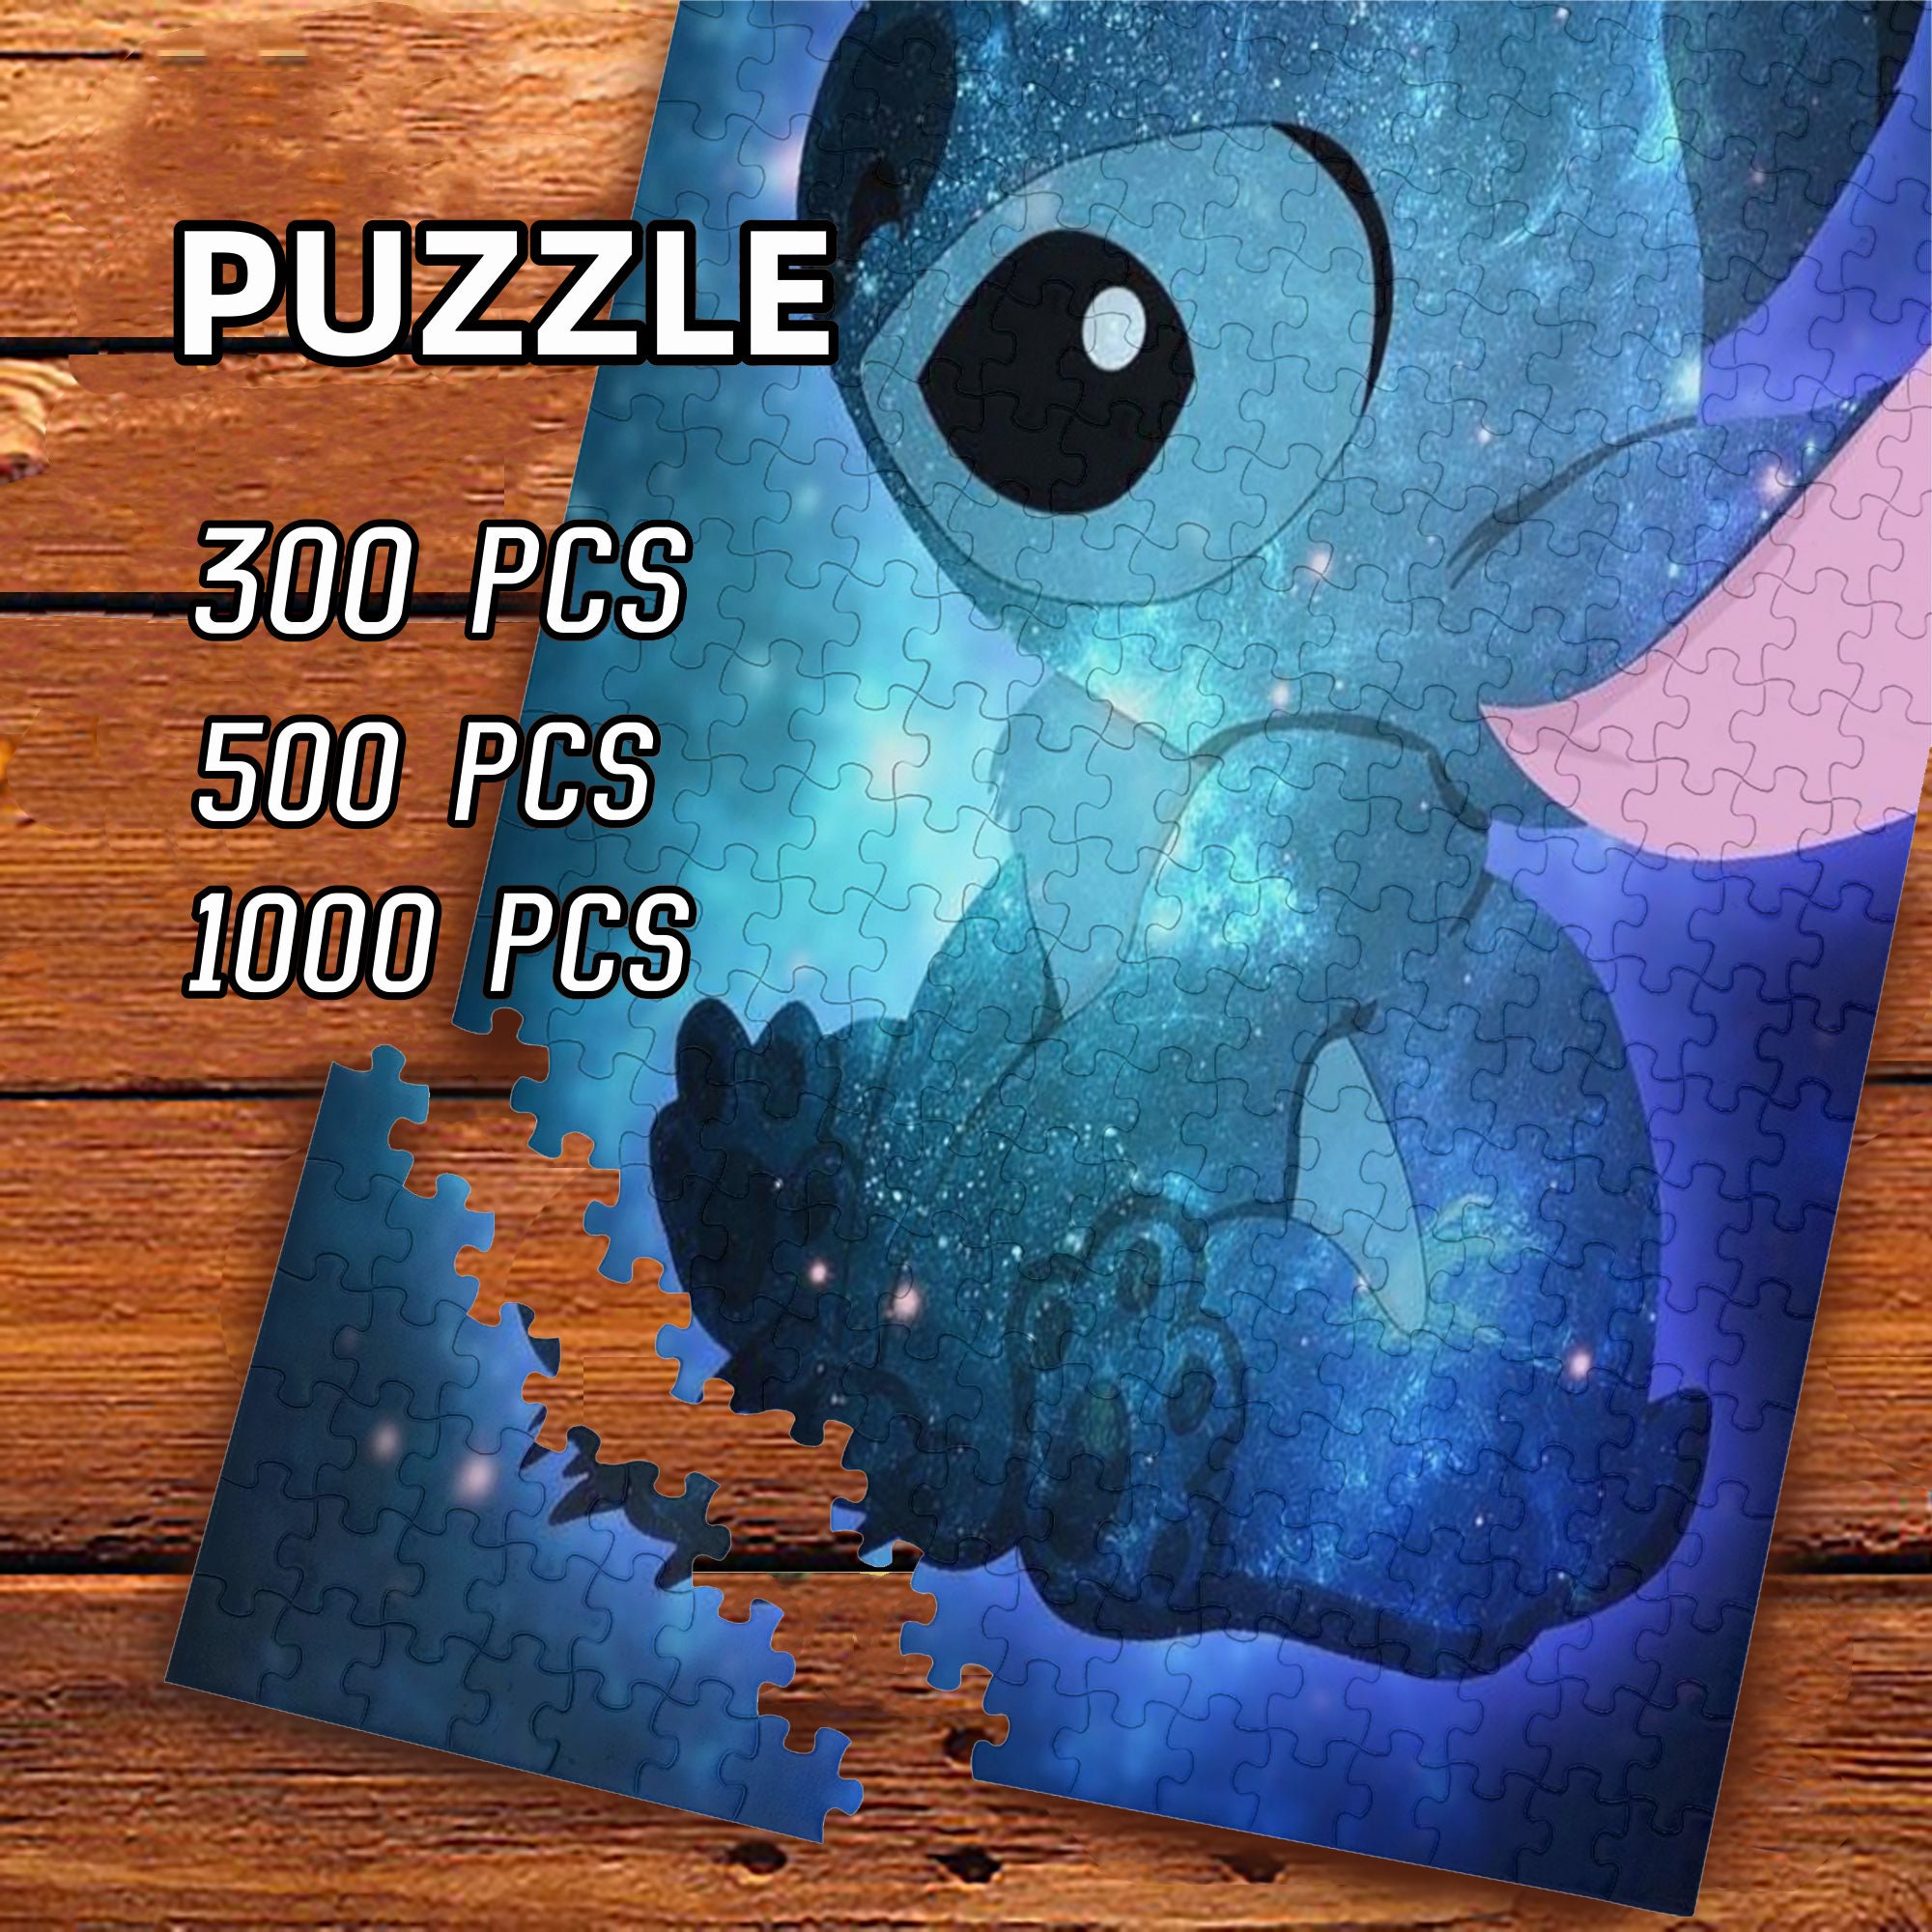 2021 Disney Lilo And Stitch 500pc Jigsaw Puzzle 11”x14” Sealed